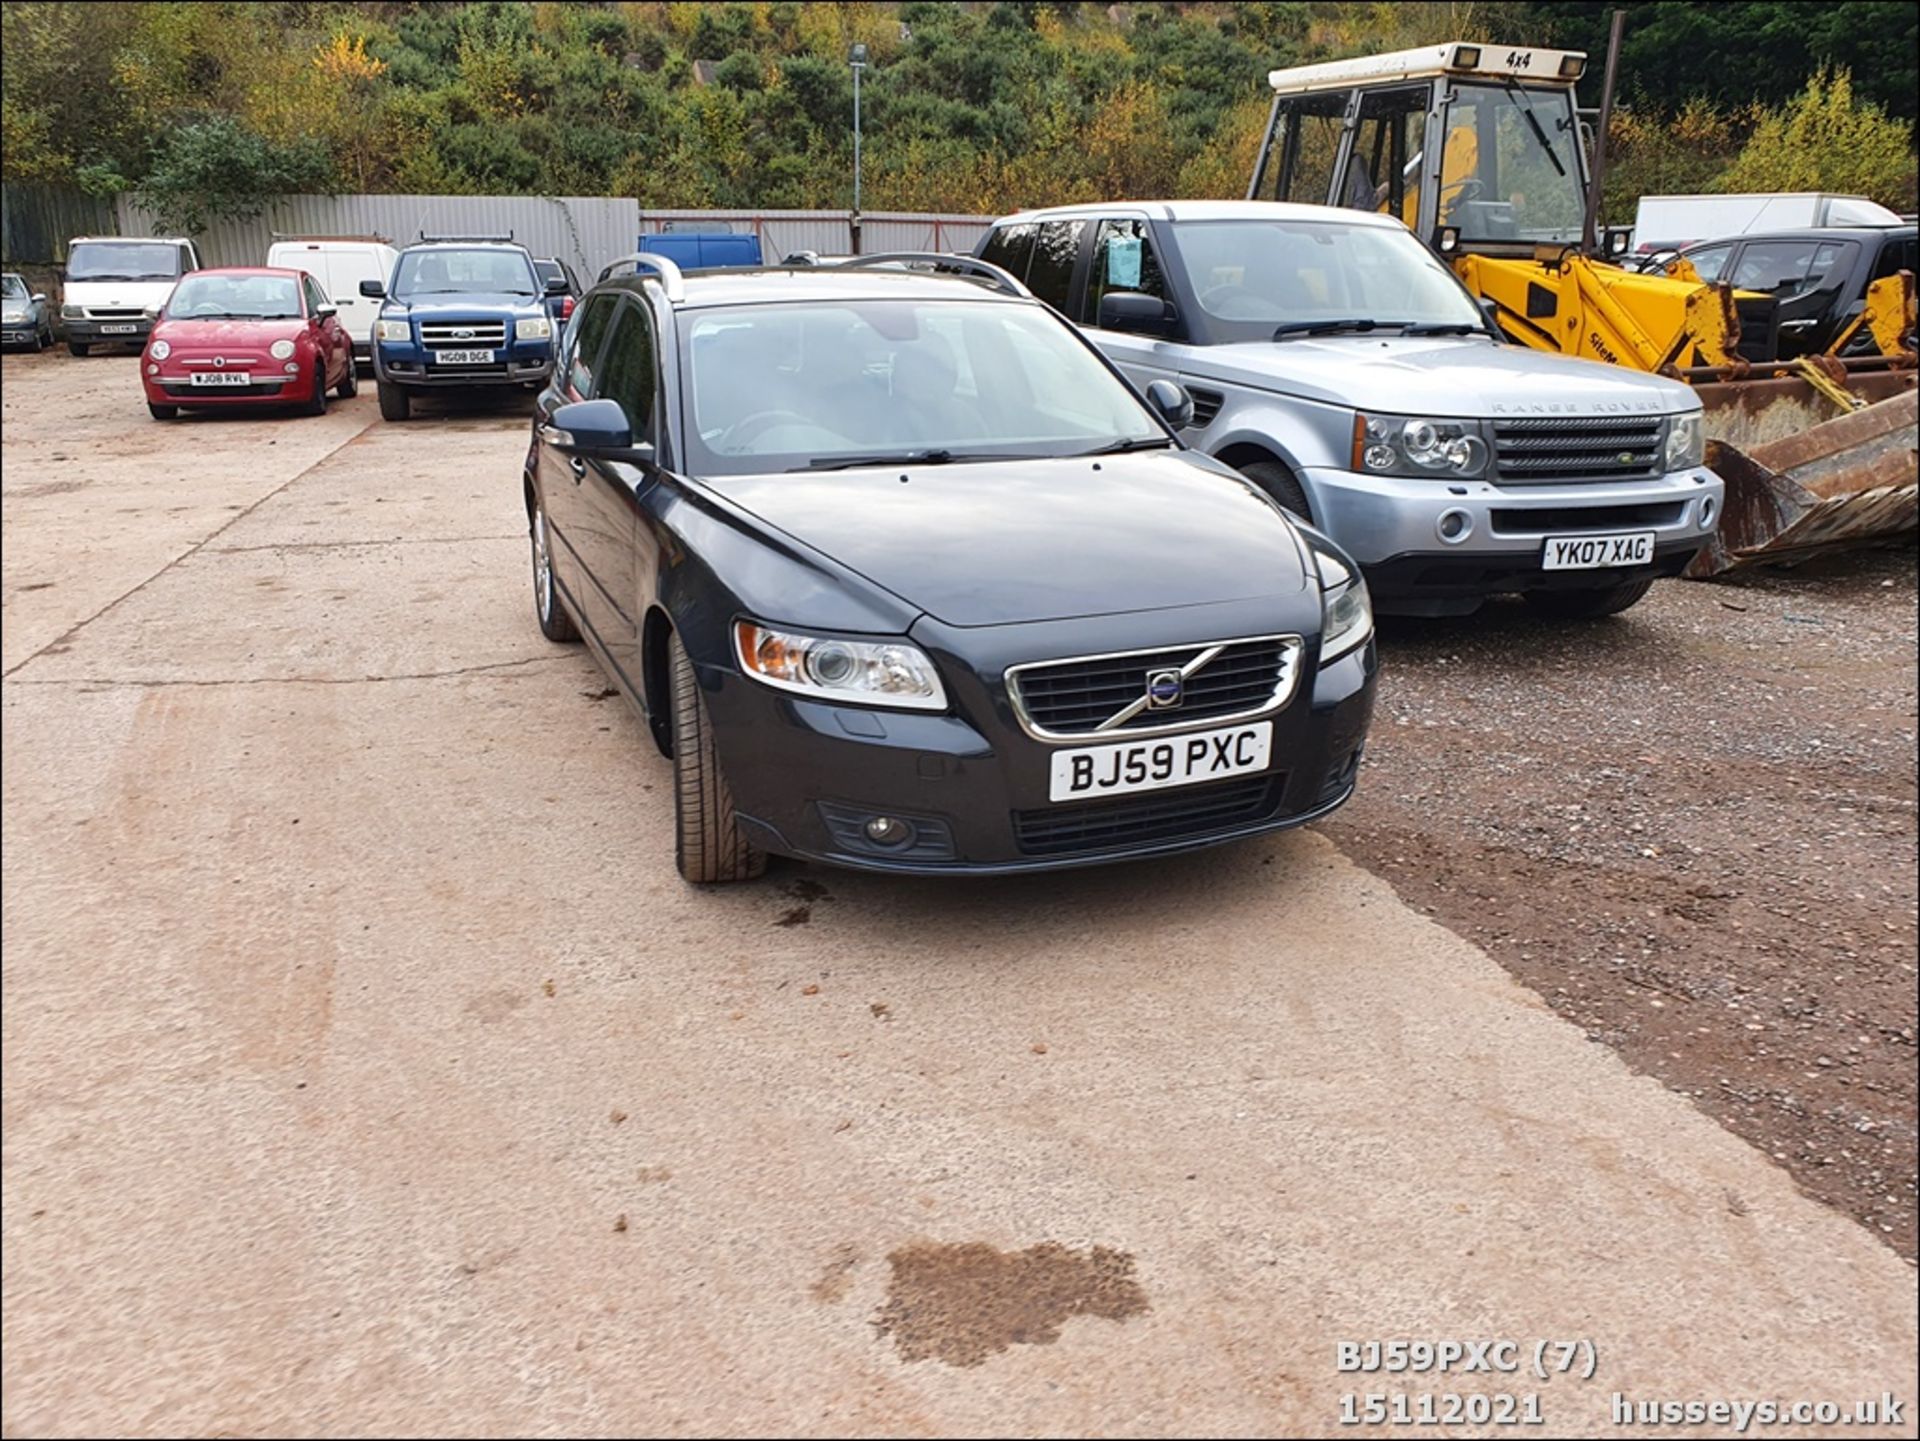 09/59 VOLVO V50 SE LUX D DRIVE - 1560cc 5dr Estate (Grey, 115k) - Image 7 of 21